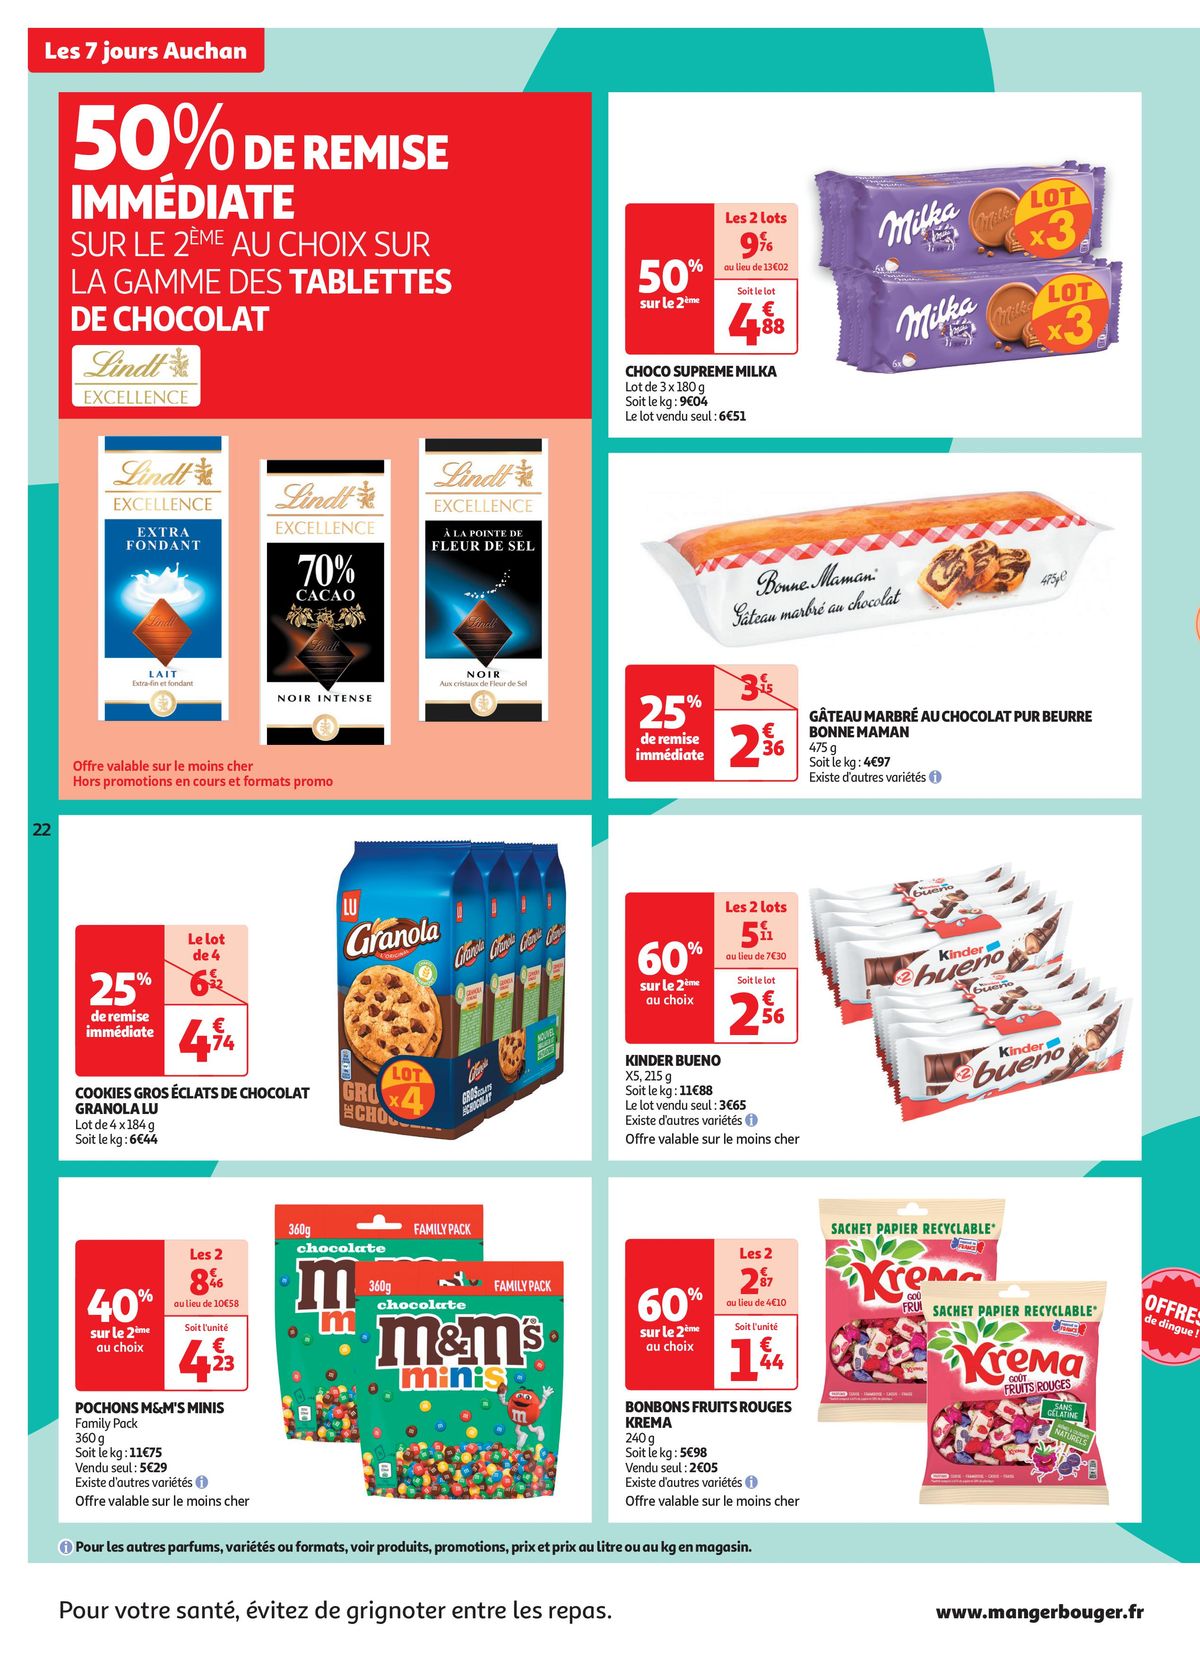 Catalogue C'est les 7 jours Auchan dans votre super !, page 00022